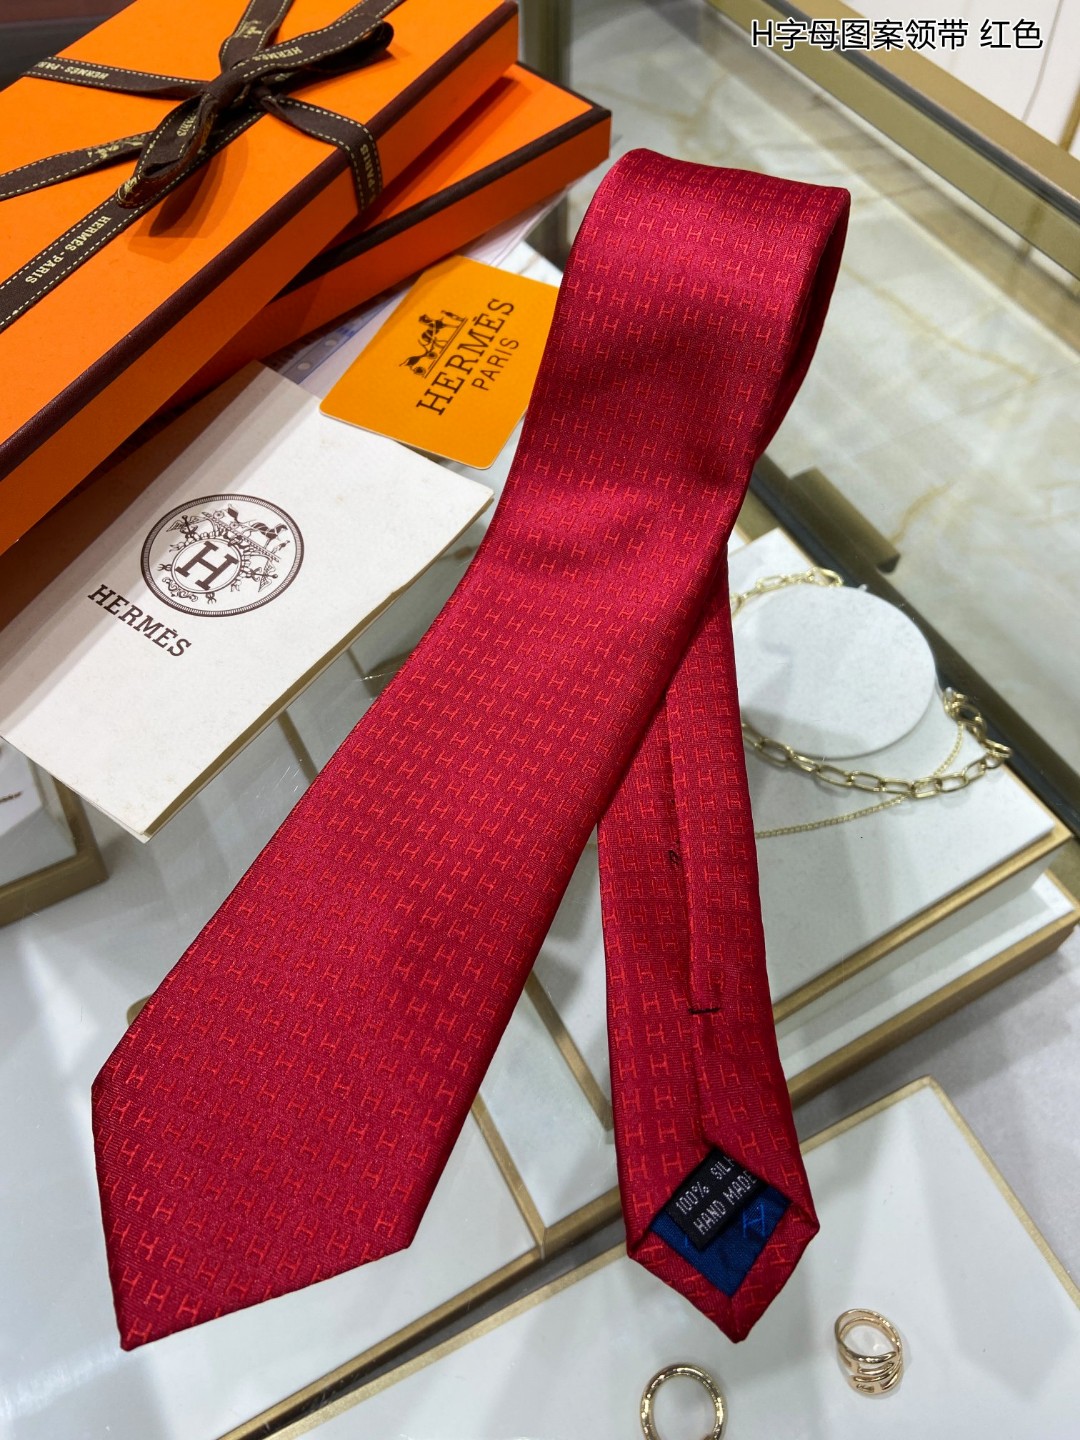 男士新款领带系列H图案提花领带稀有H